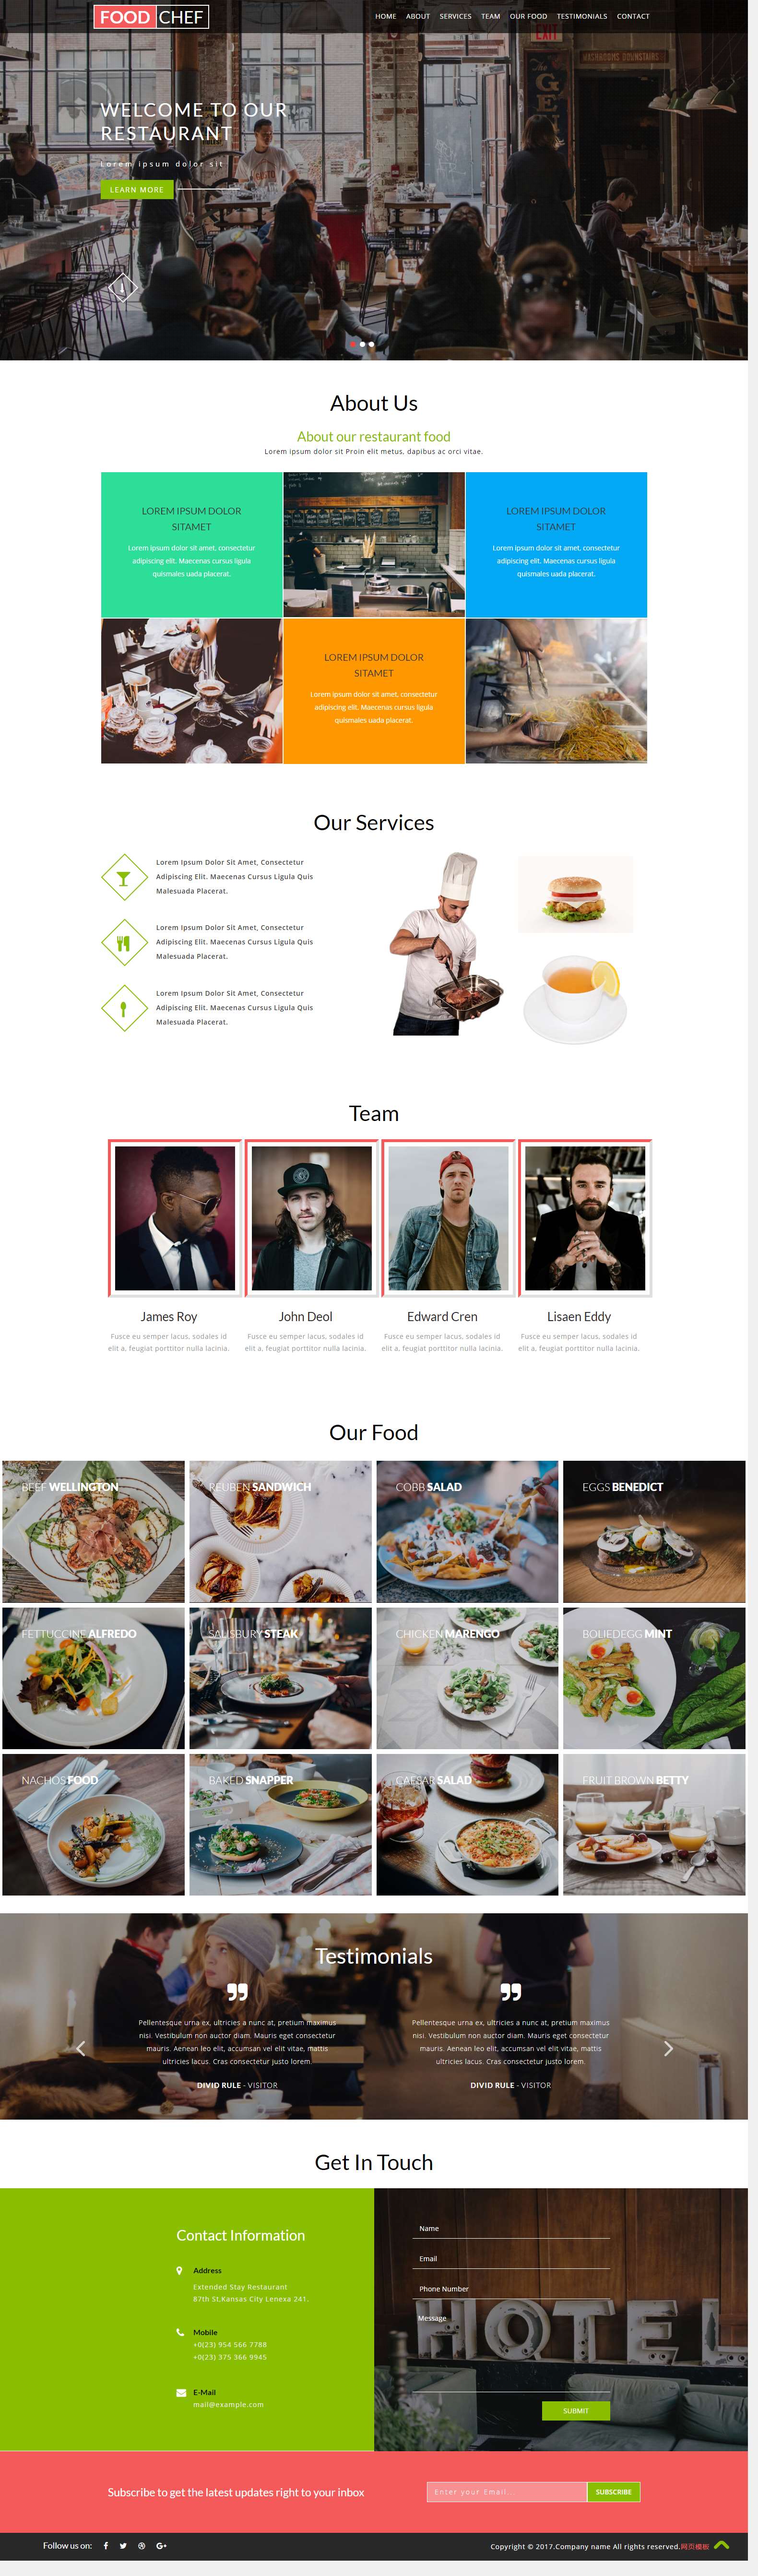 黑色大气风格的美食类网站模板下载